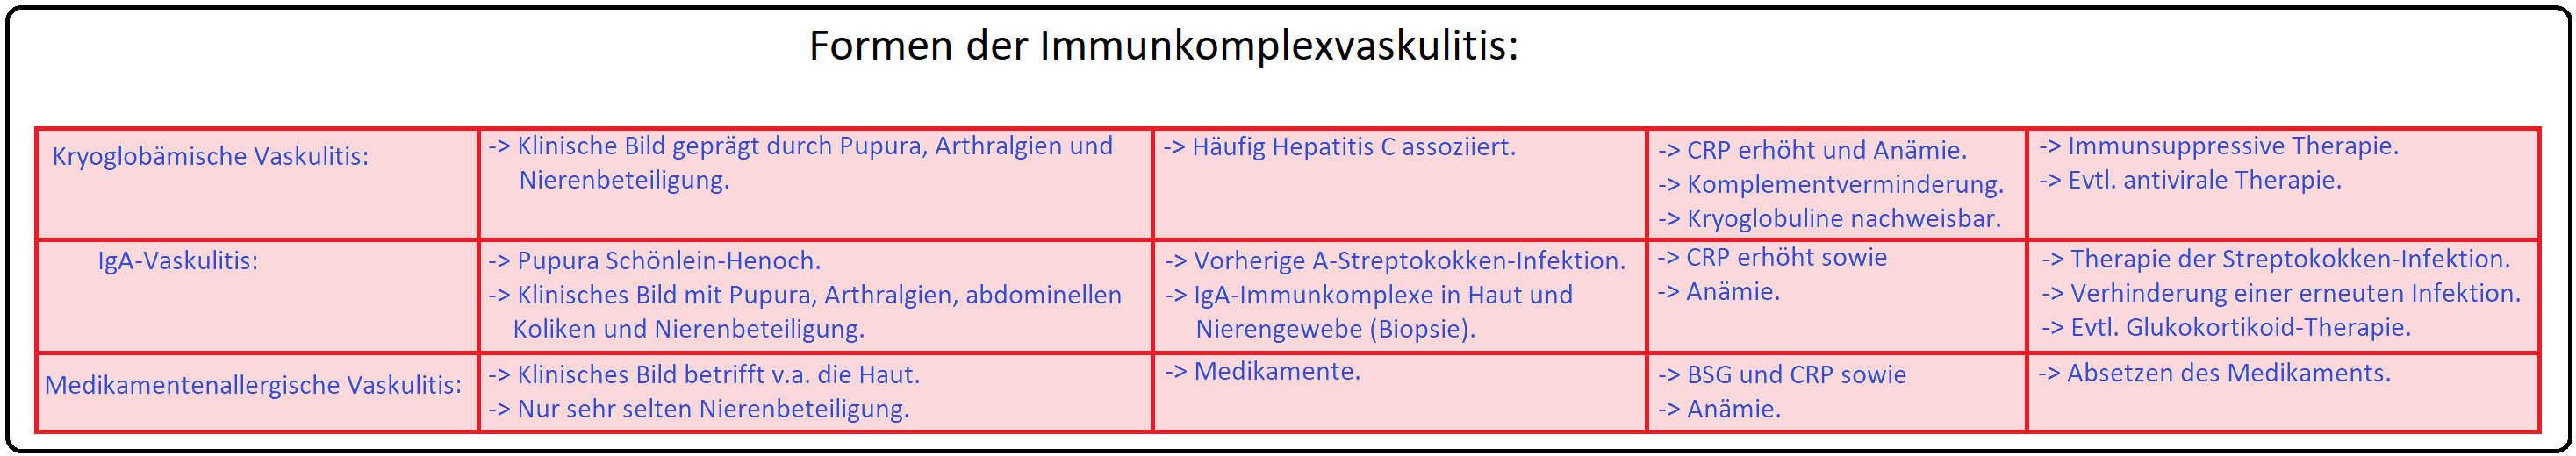 1213 Formen der Immunkomplexvaskulitis